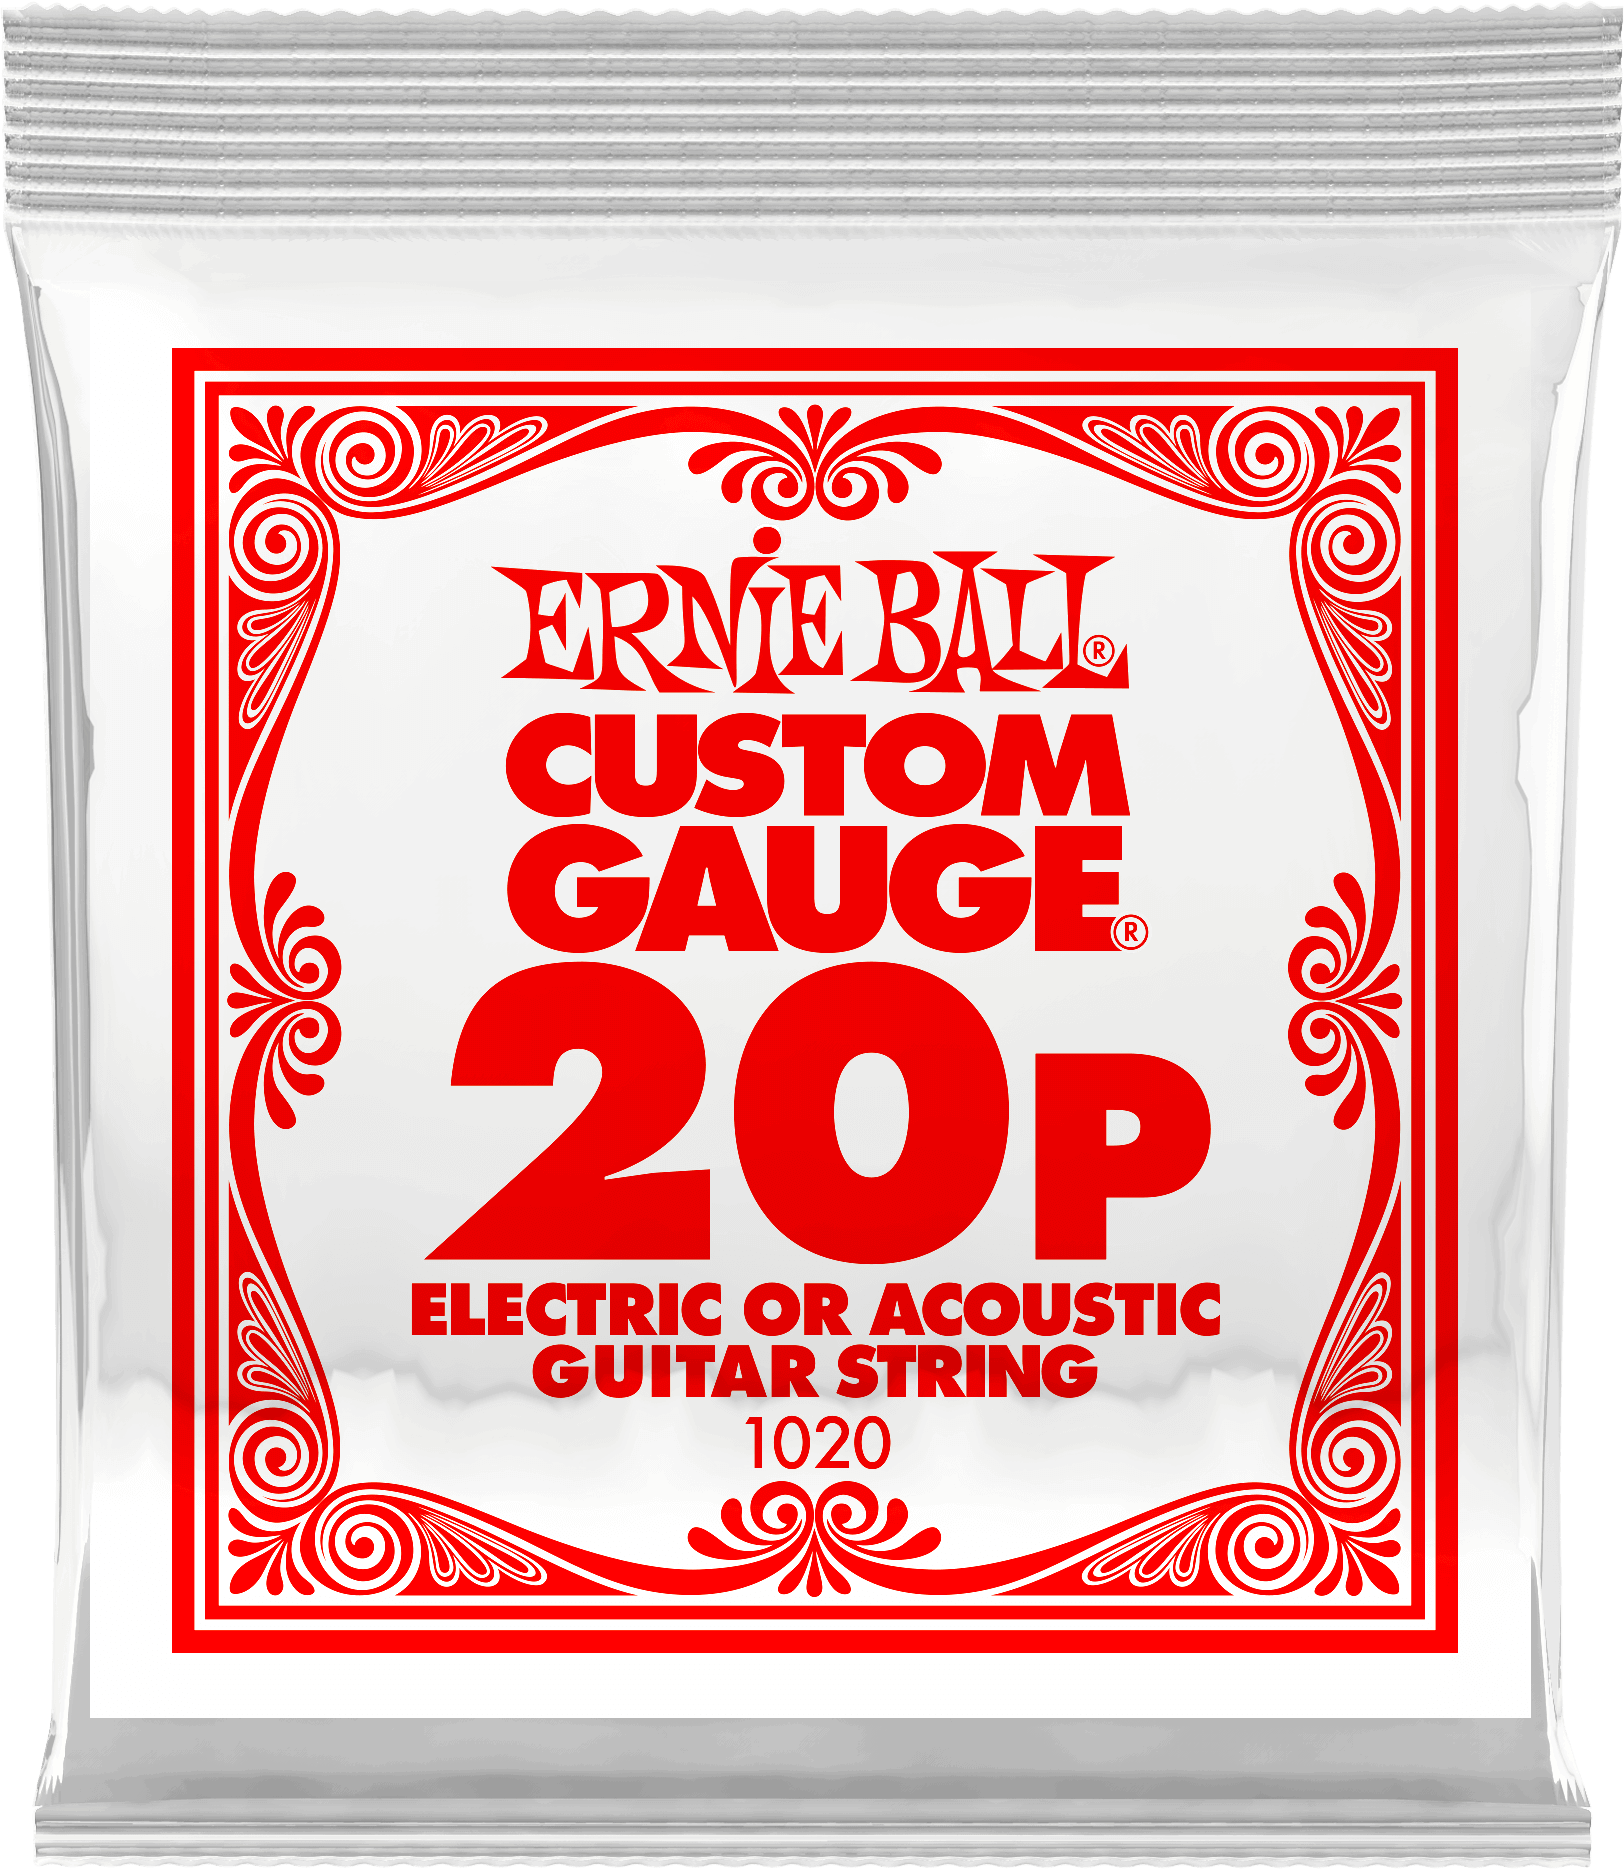 Струна для акустической и электрогитары Ernie Ball P01020 Custom gauge сталь калибр 20 Ernie Ball (Эрни Бол)